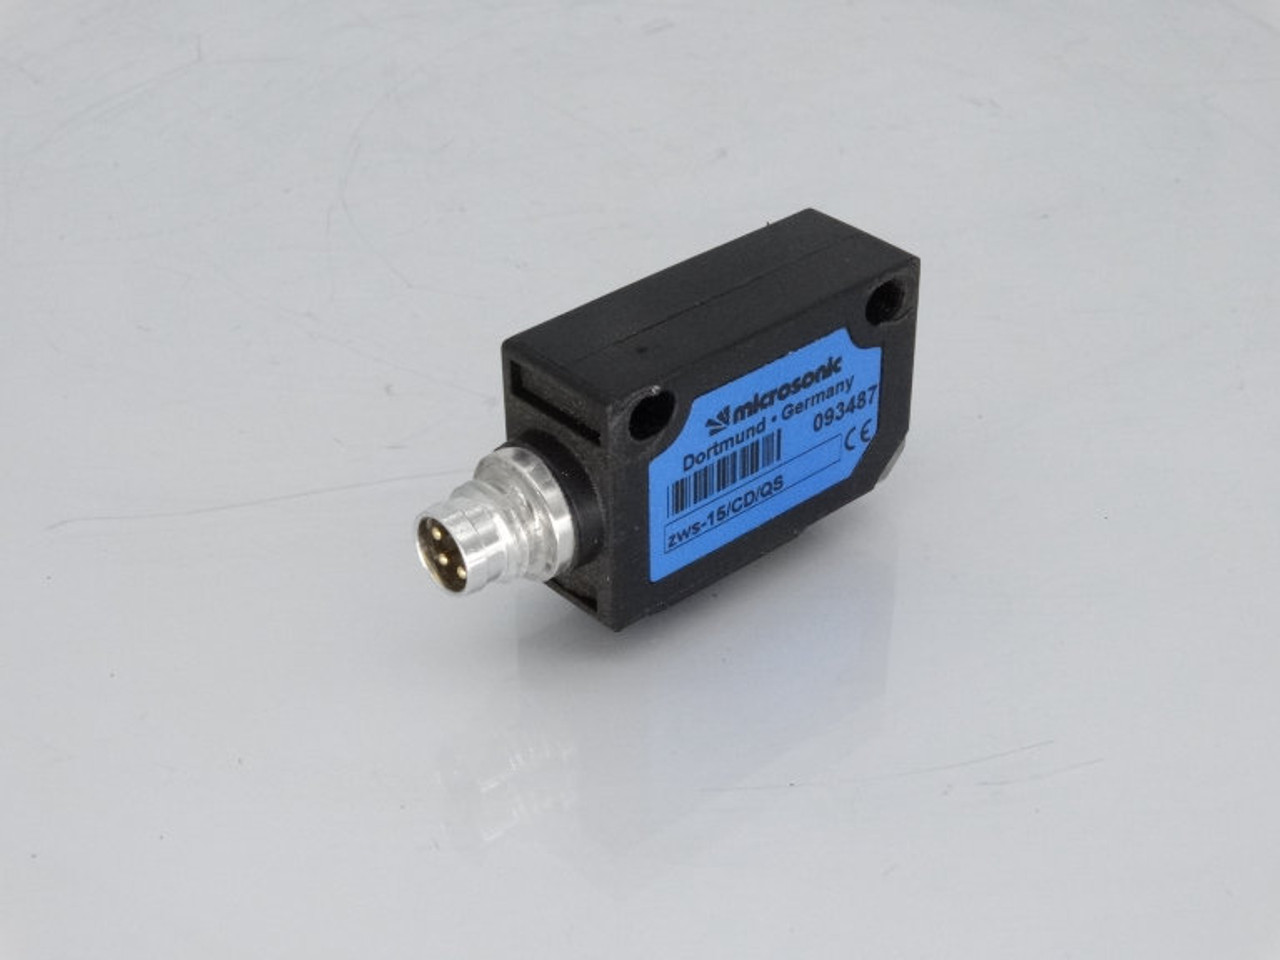 Sensorik SK1-15-M18-P-nb-S-MS-Y2 - On Sale